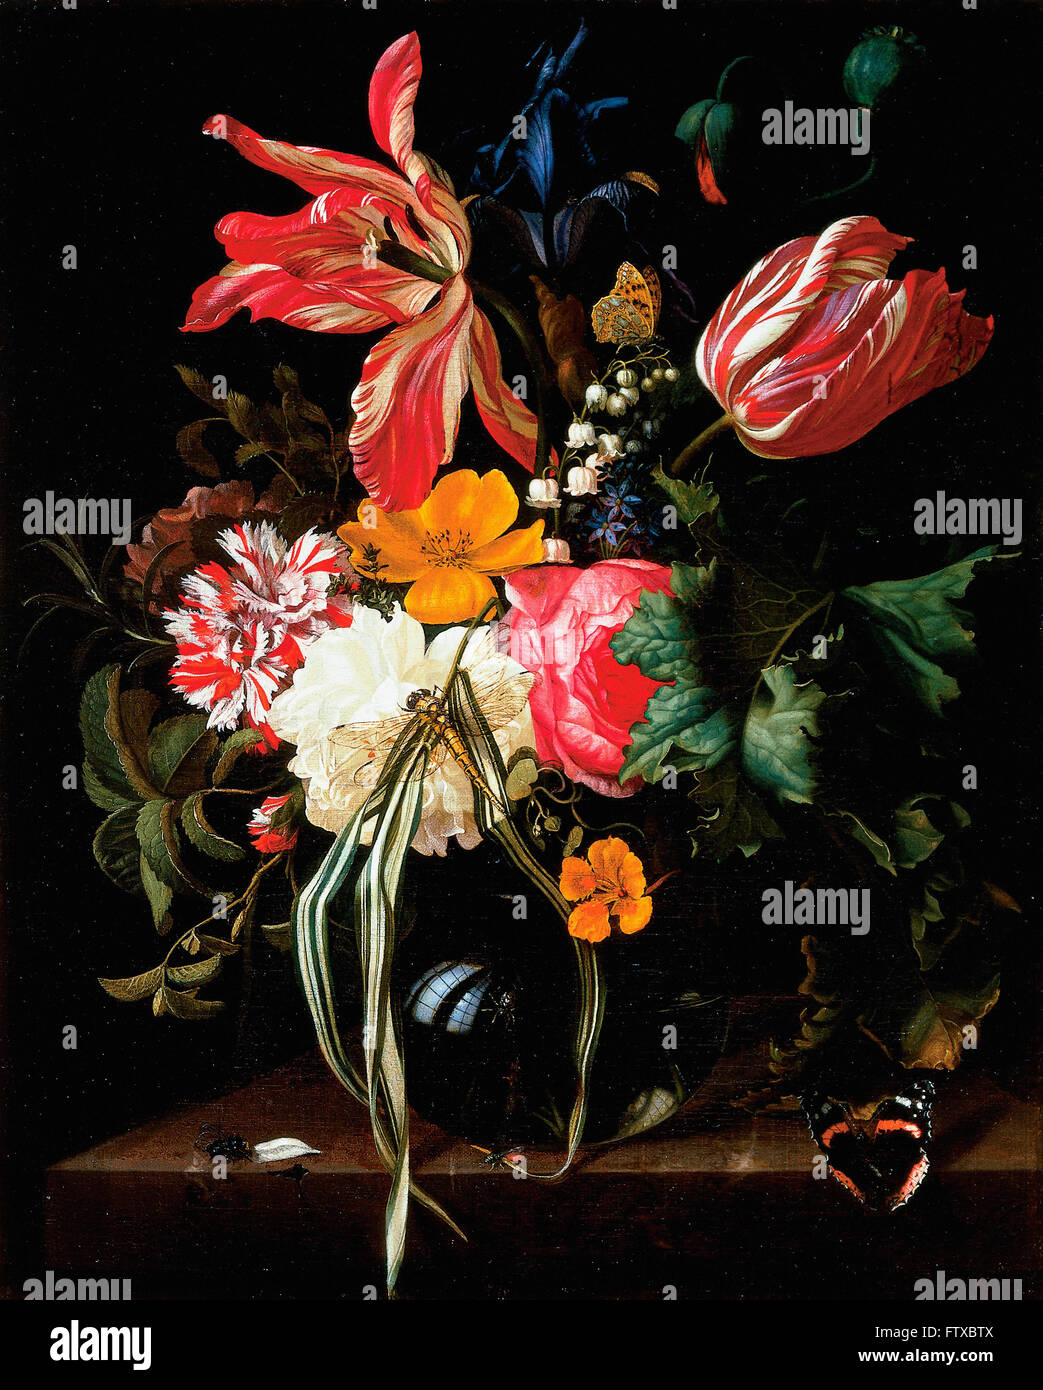 Maria van Oosterwijck - Flower Still Life -  Cincinnati Art Museum Stock Photo